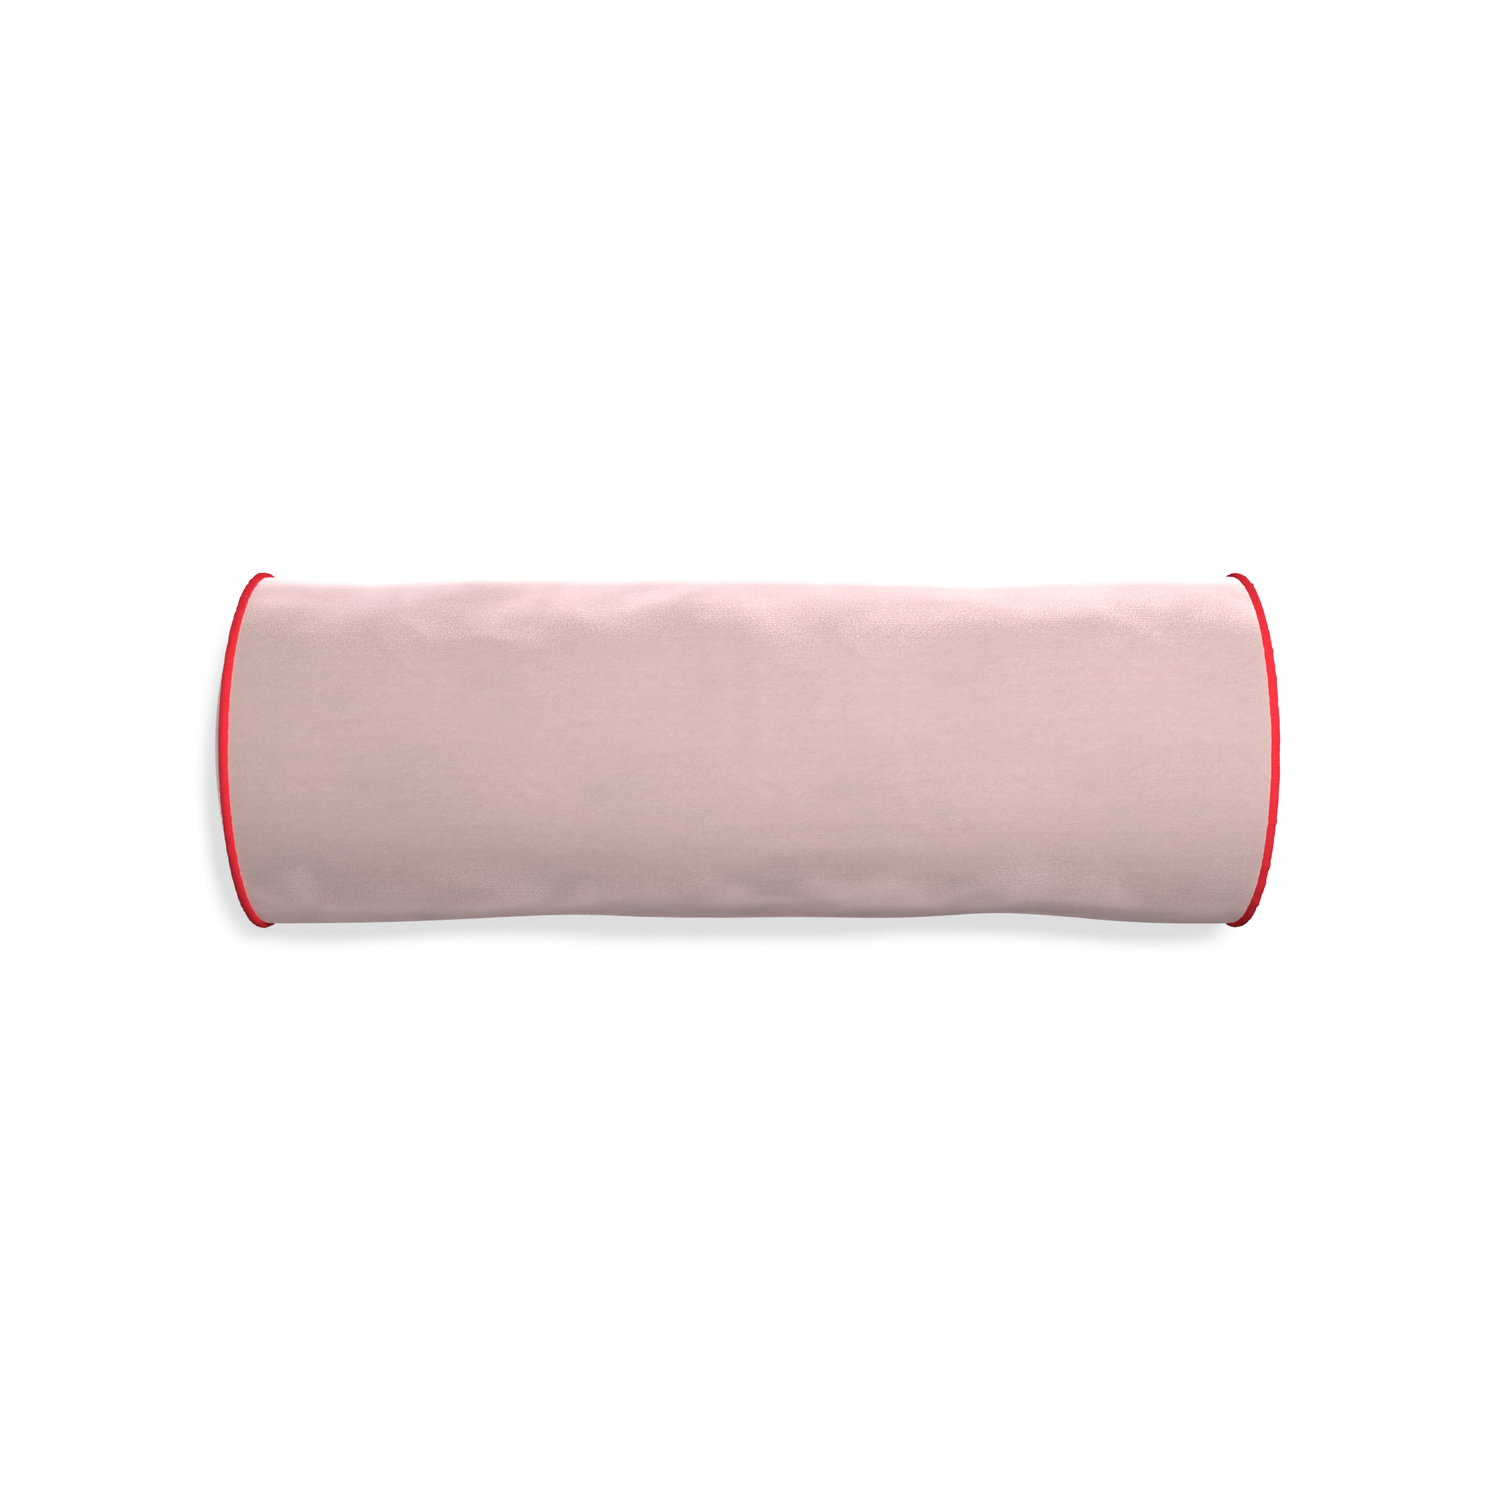 Bolster rose velvet custom pillow with cherry piping on white background